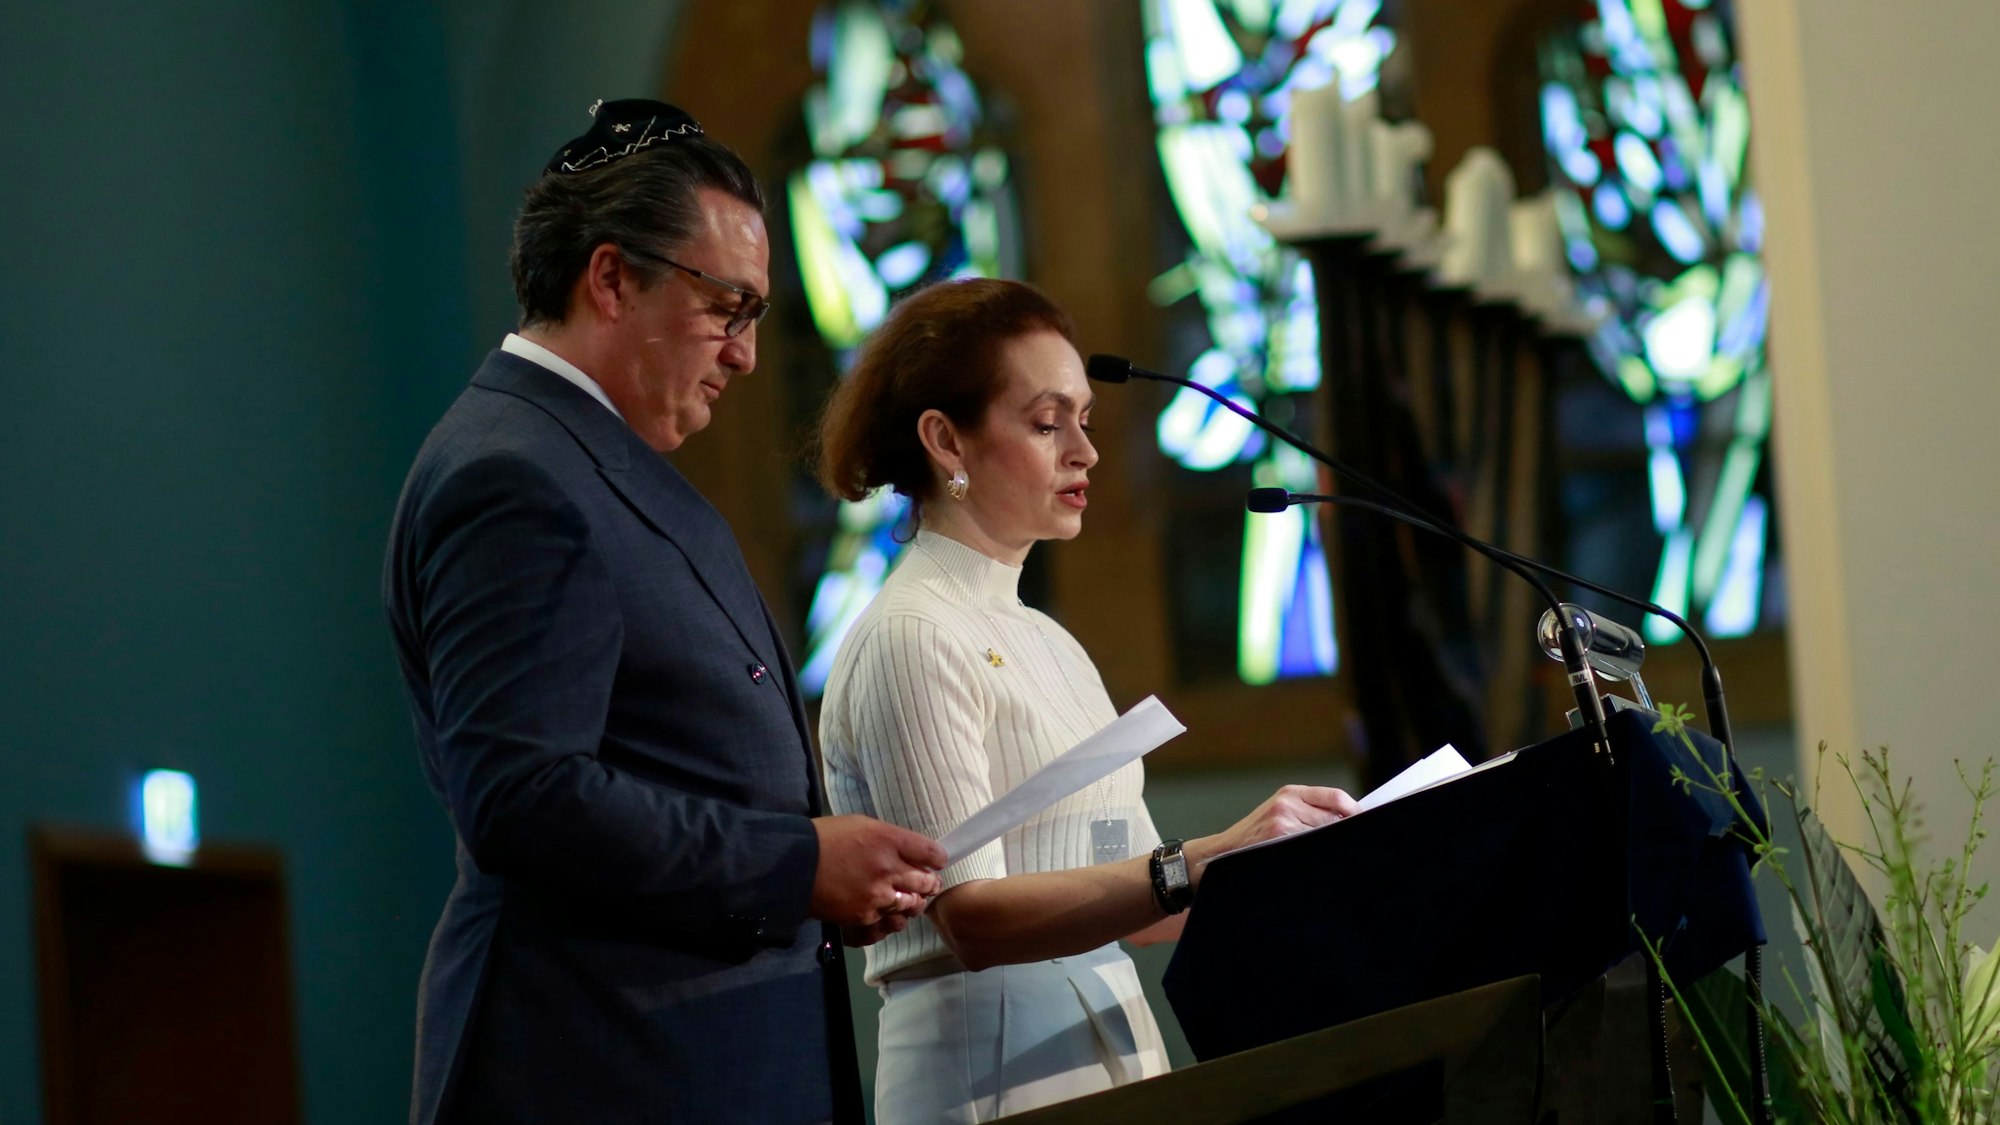 Vorstandsmitglieder Bettina Levy und Felix Schotland führen durch den Jahresempfang der Synagogen-Gemeinde Köln.
